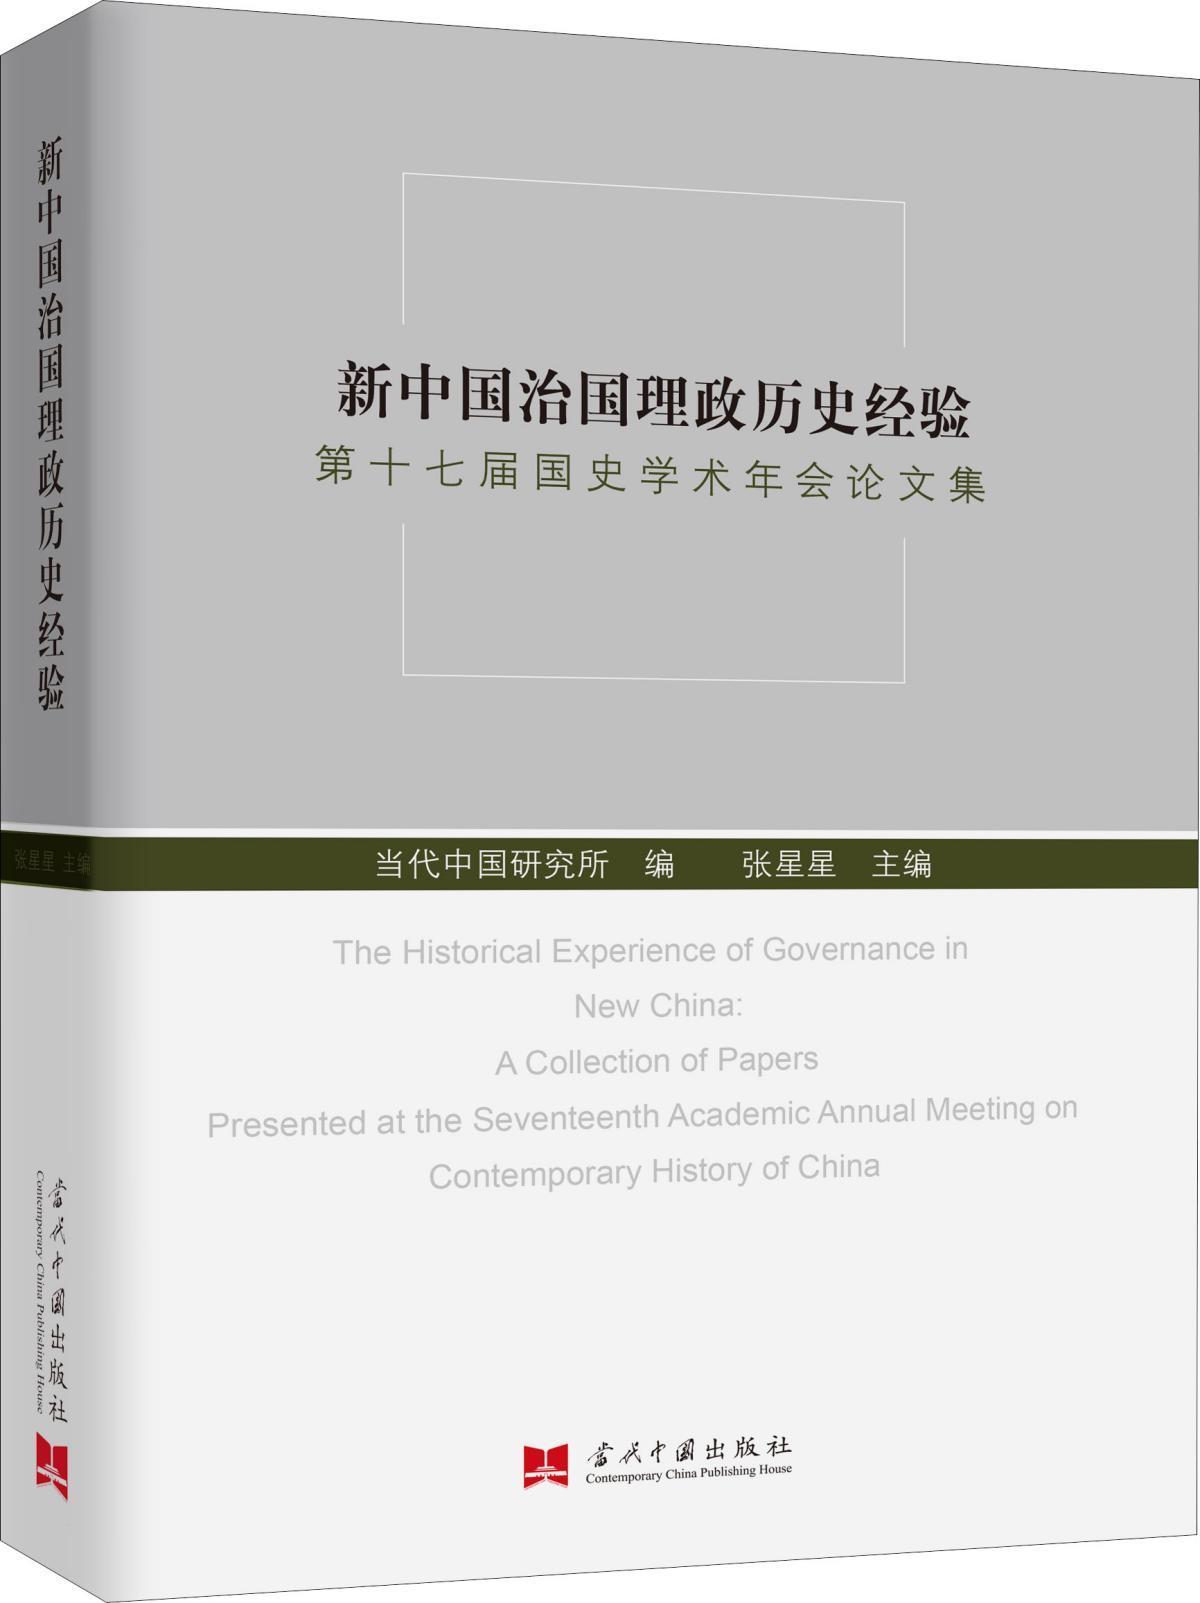 新中国治国理政历史经验 第十七届国史学术年会论文集